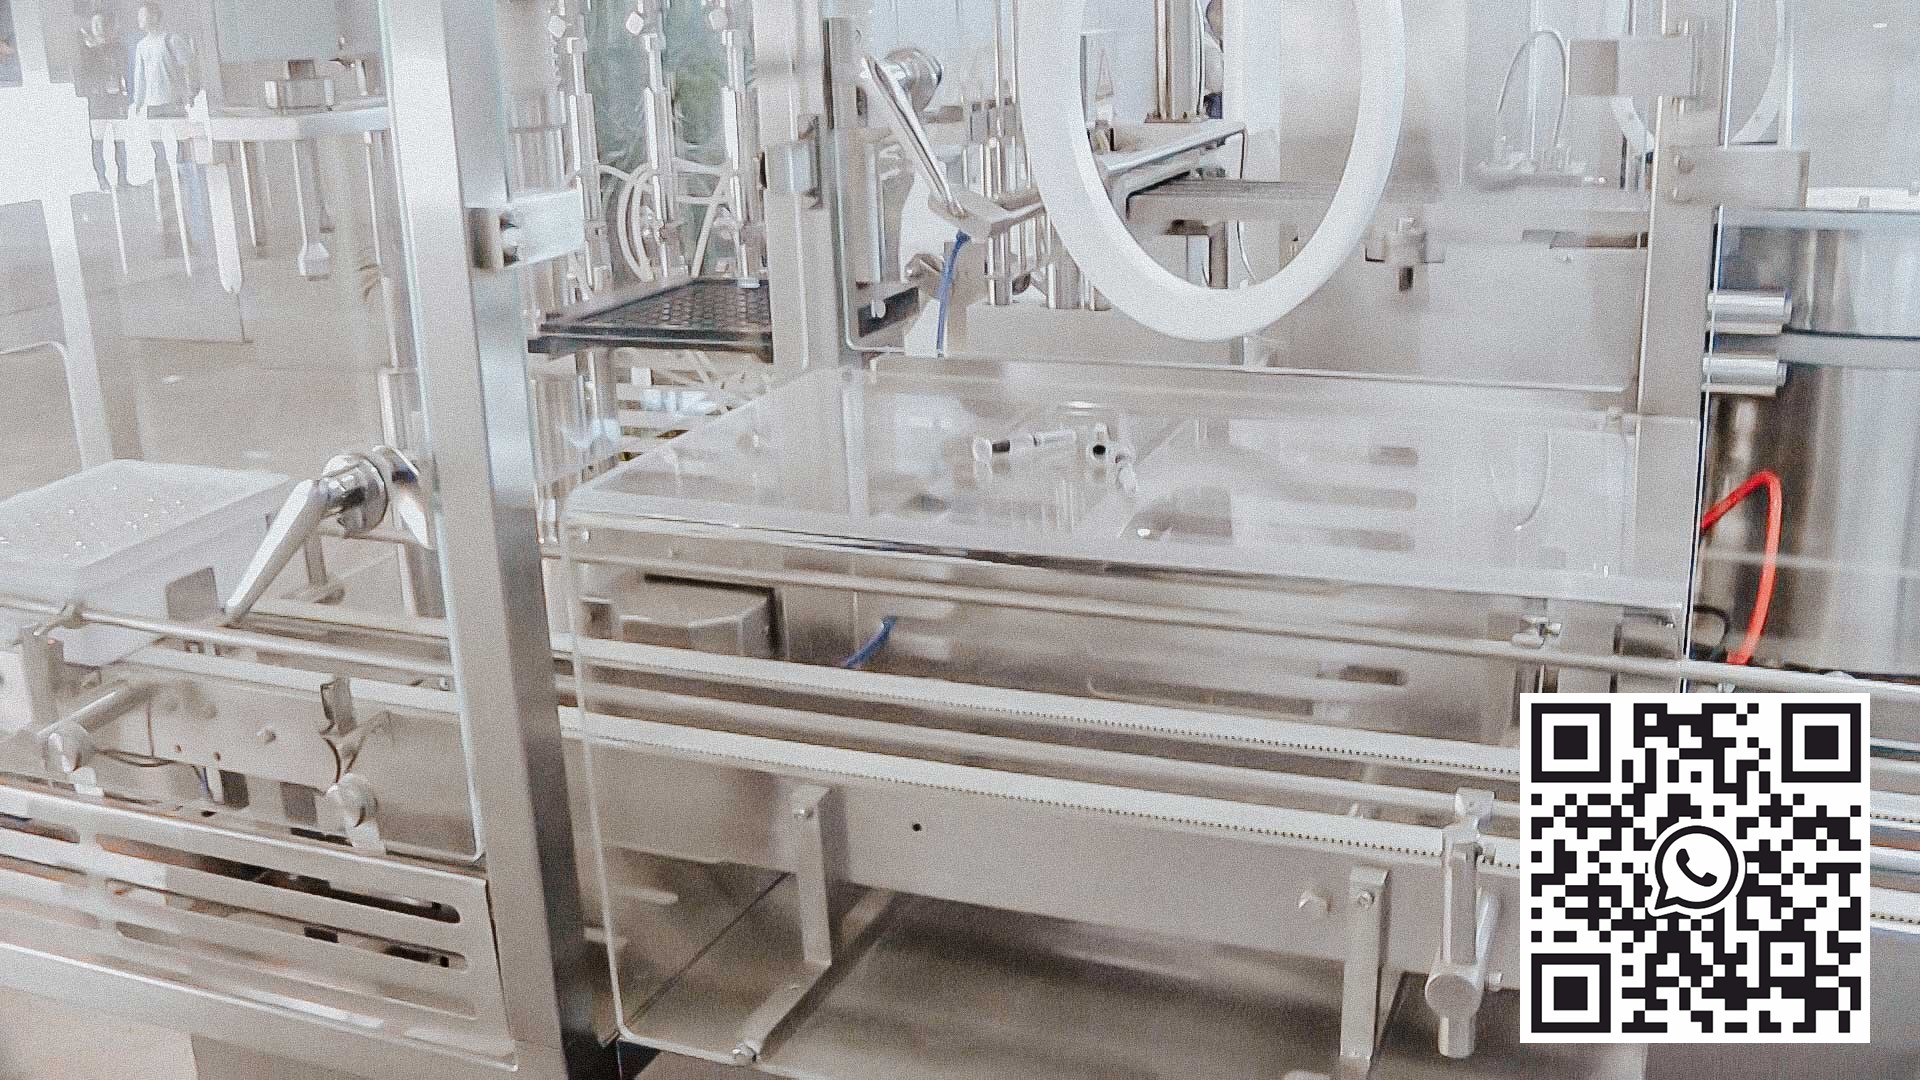 Lavadora de esterilización automática para embotellar y tapar botellas de vidrio